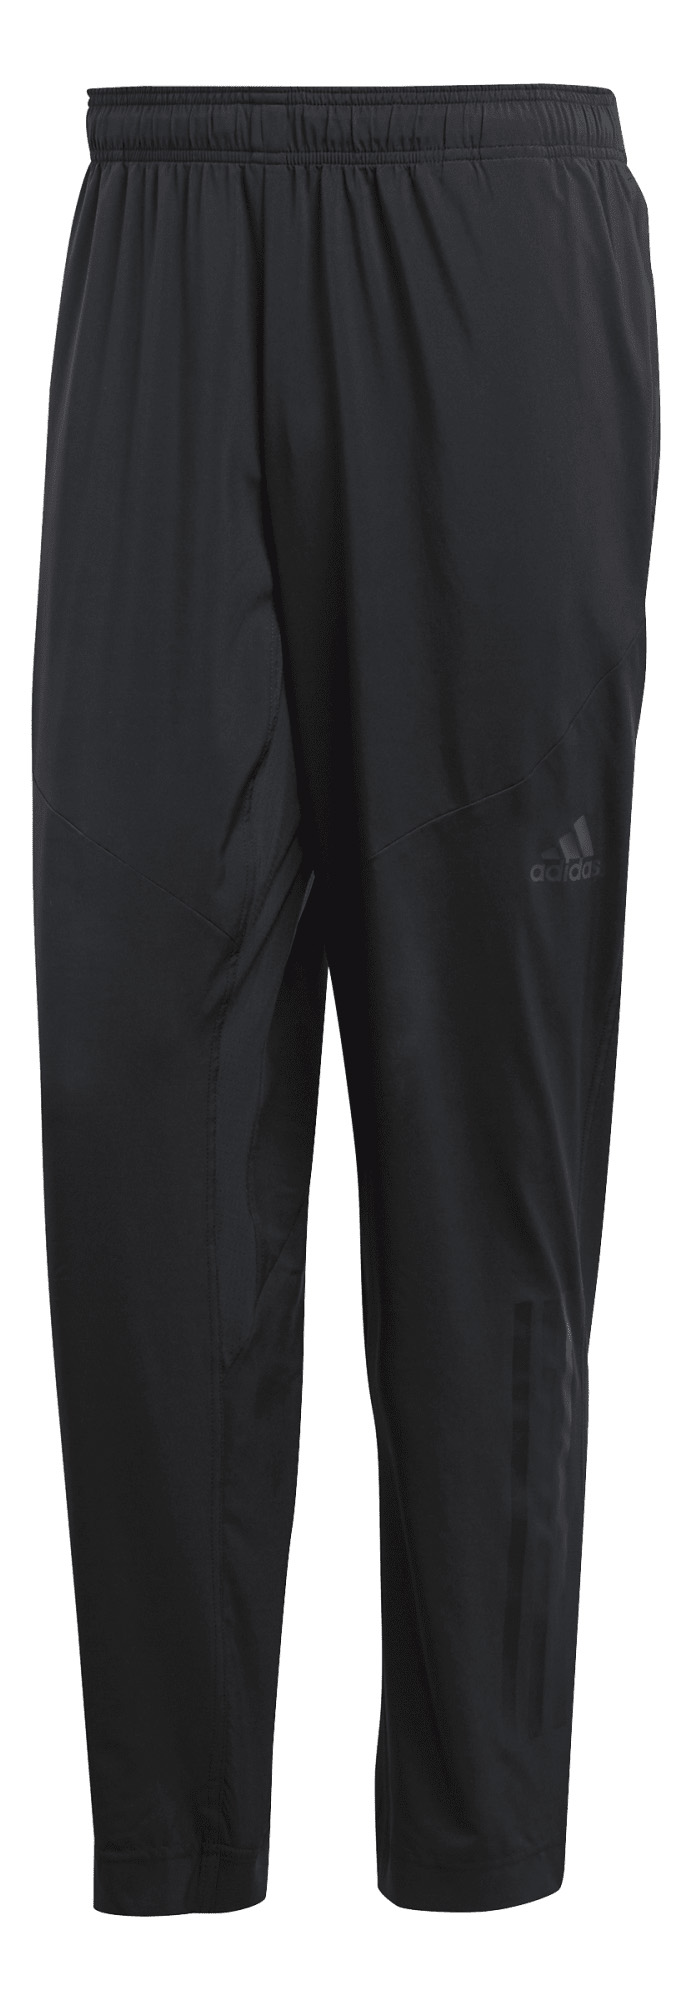 Nohavice adidas Sportswear Workout Pant Climacool spodnie 506 S